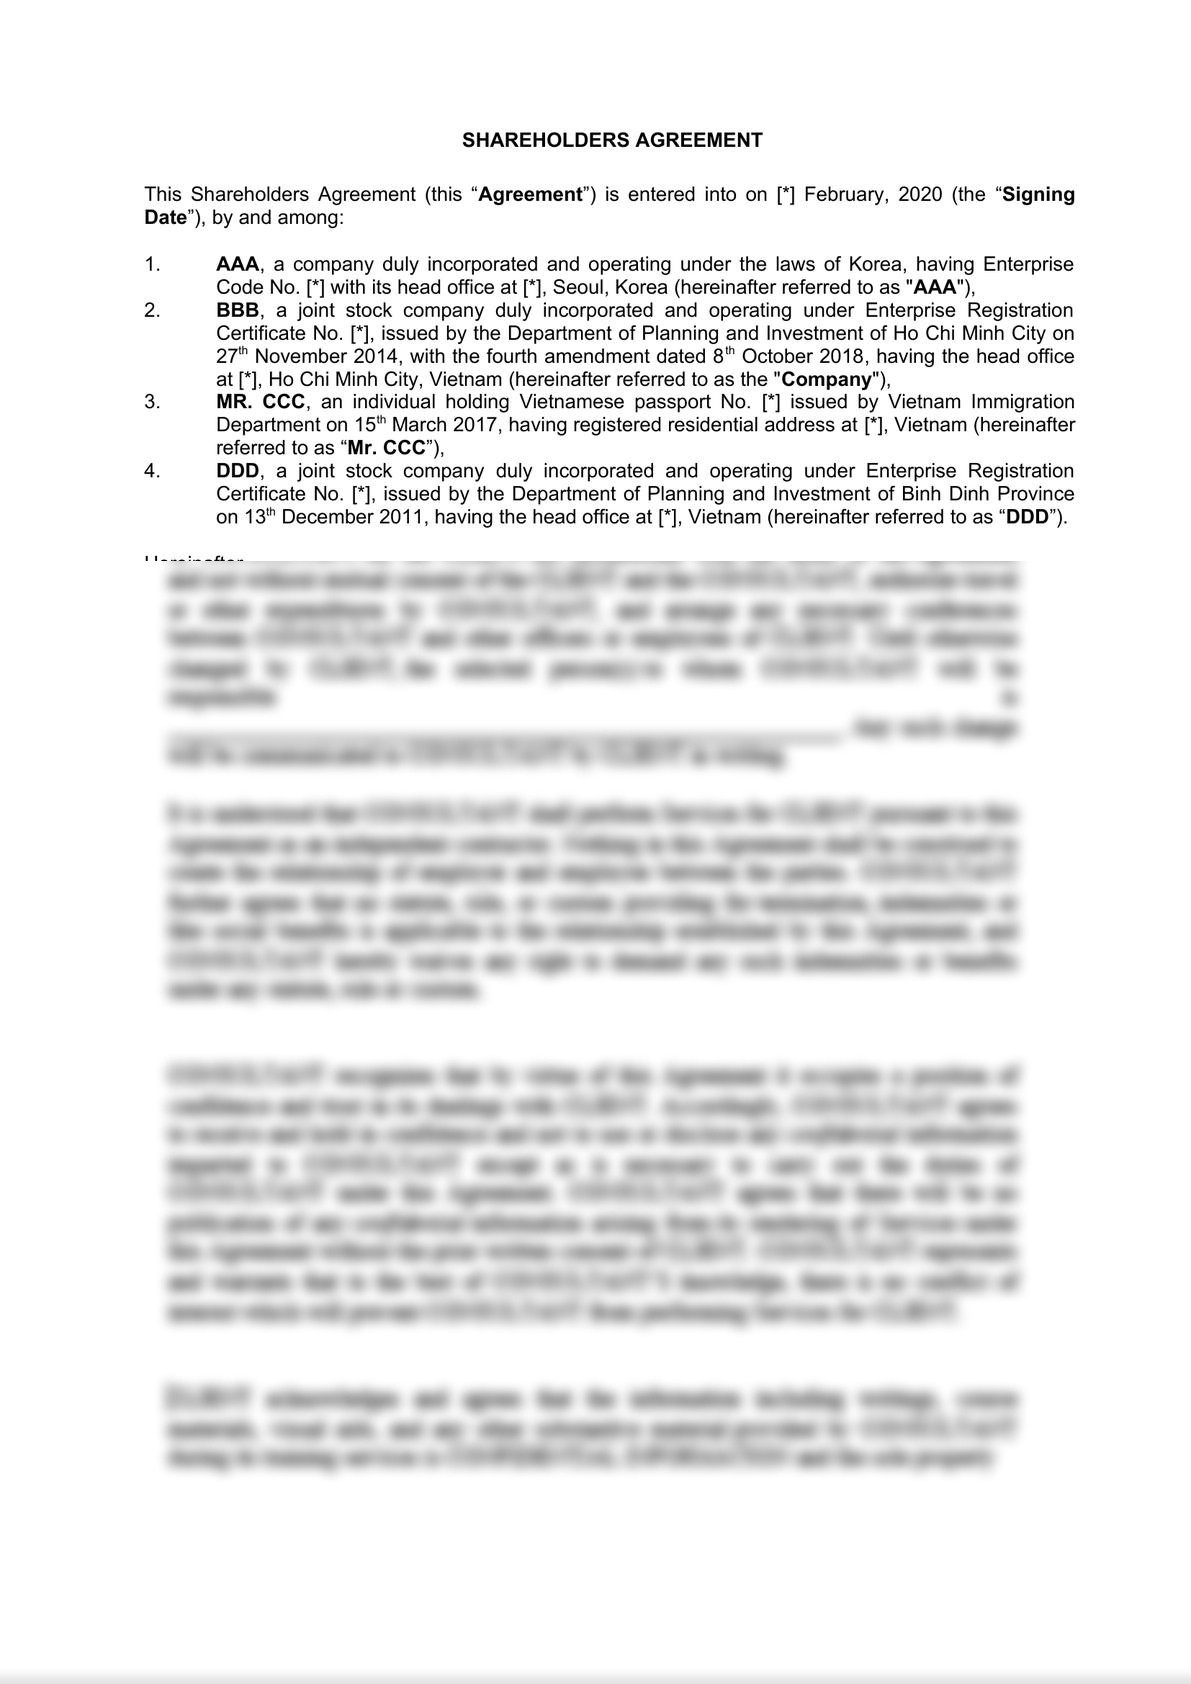 Shareholders Agreement-2